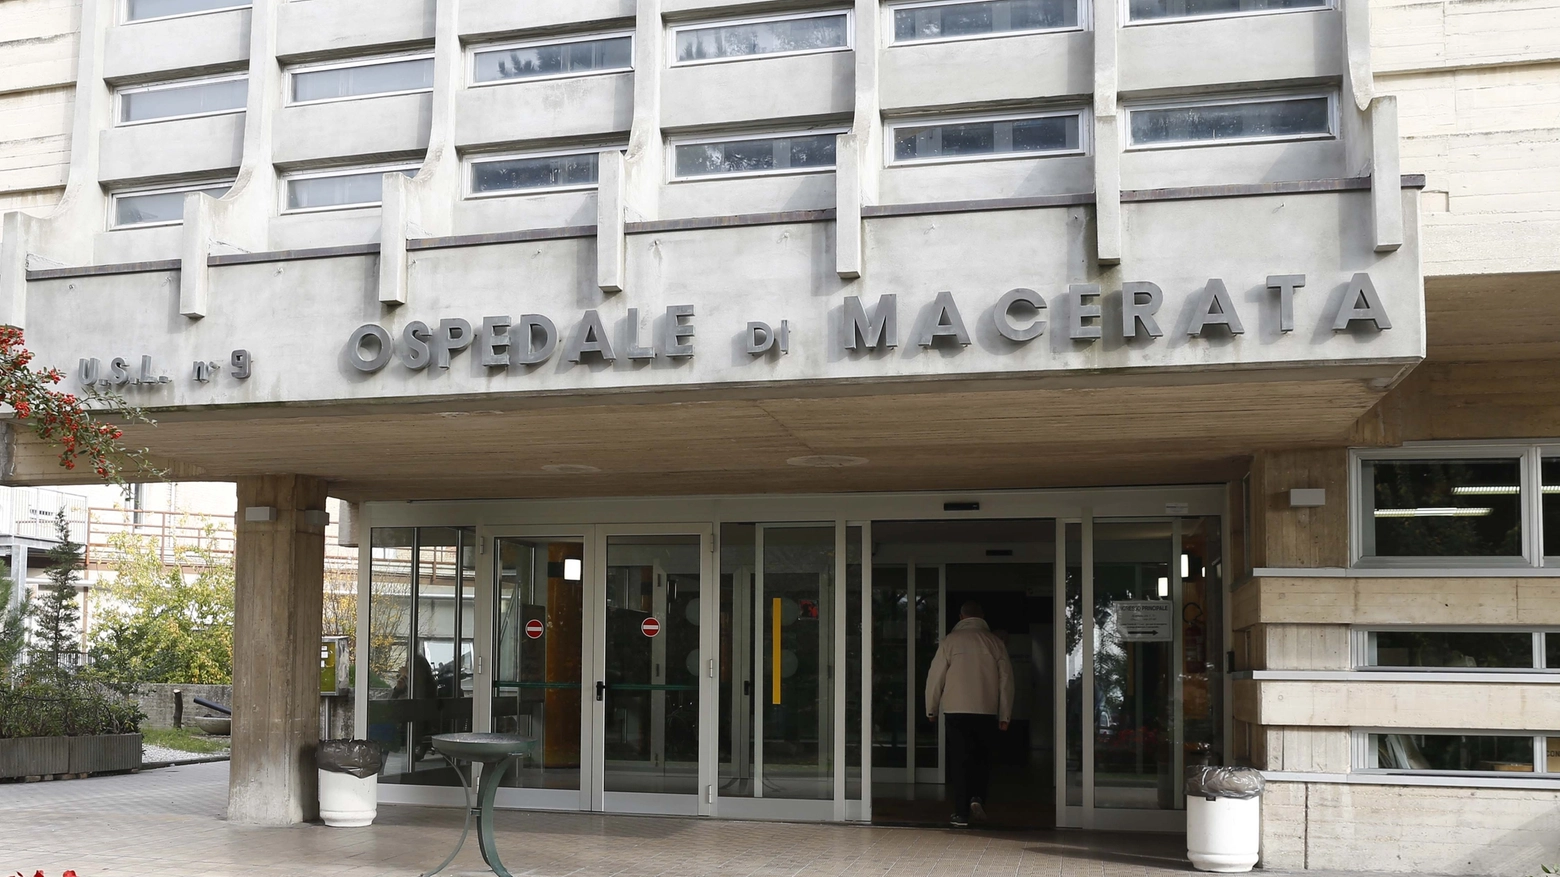 L'ospedale di Macerata (Calavita)